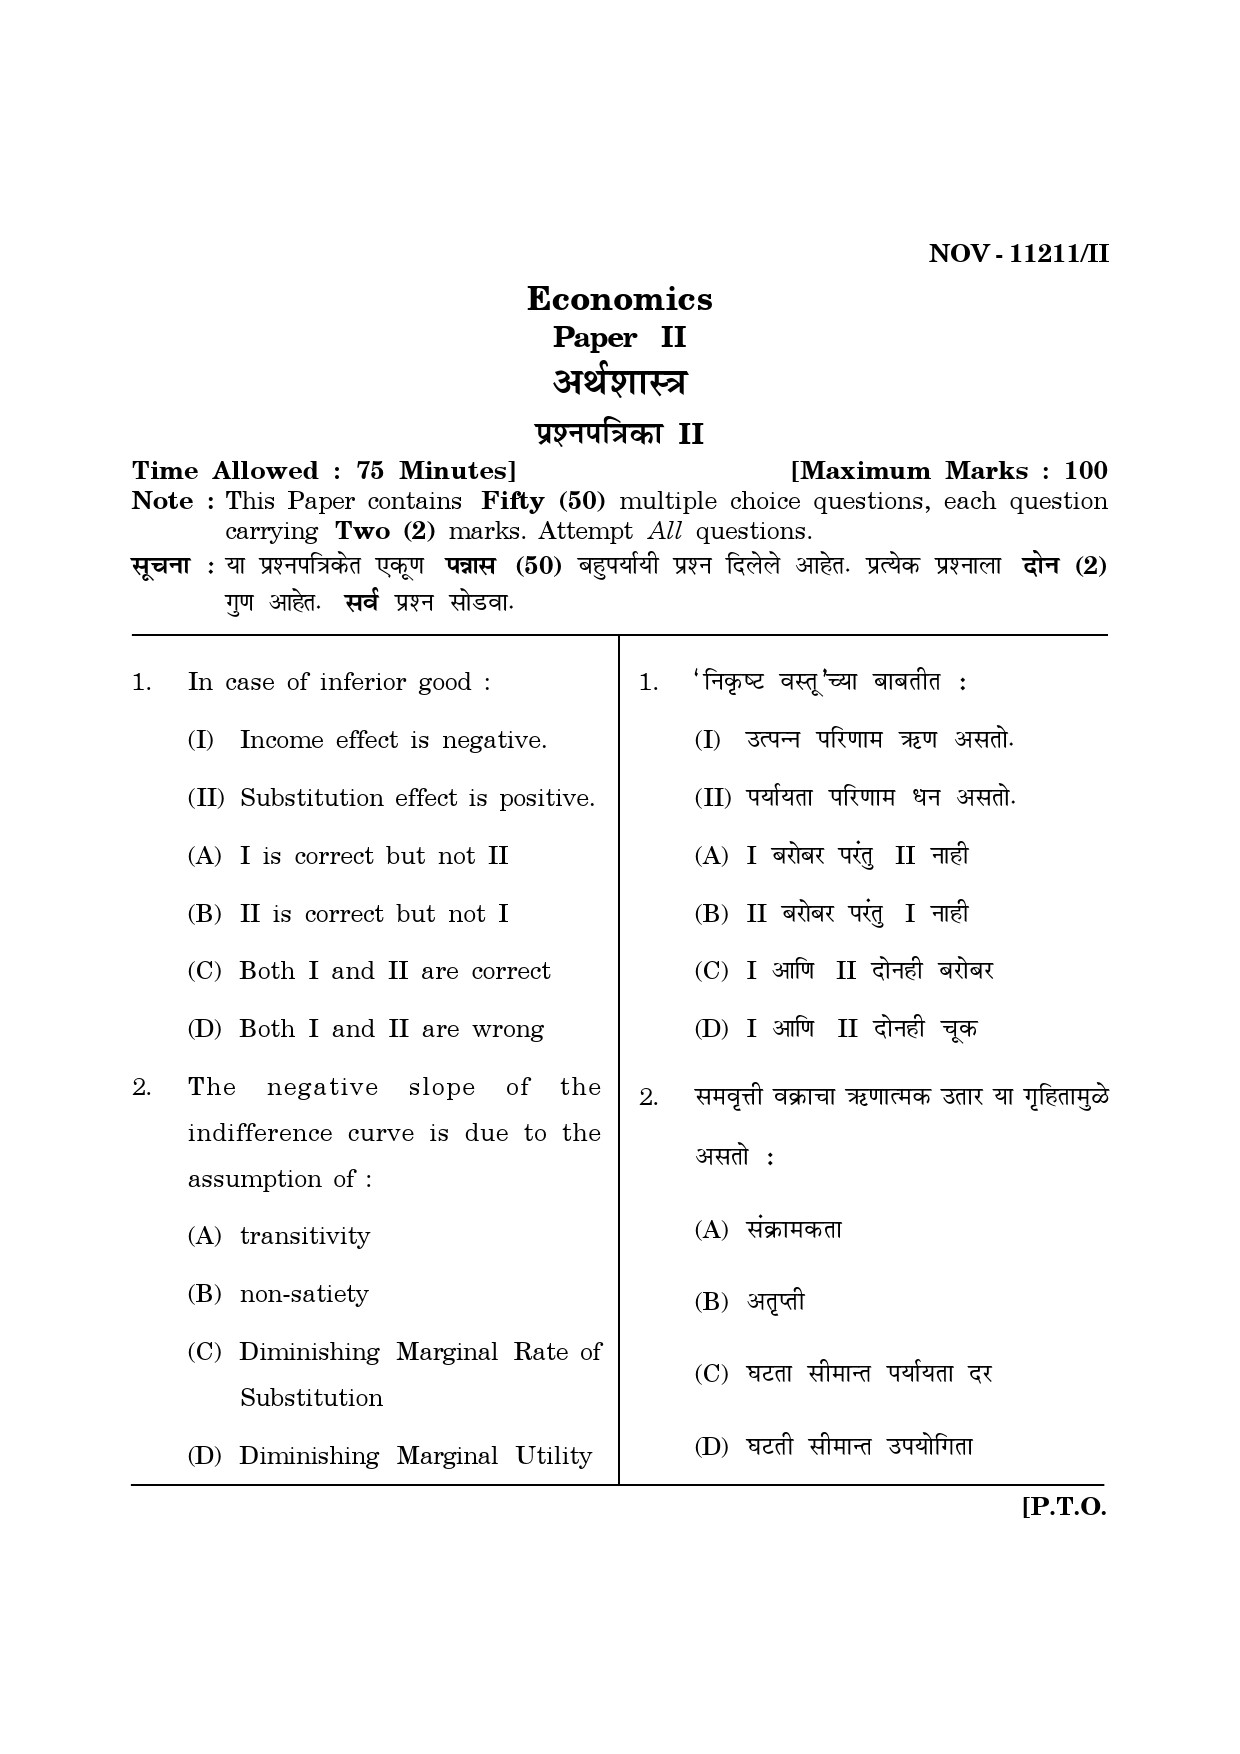 Maharashtra SET Economics Question Paper II November 2011 1